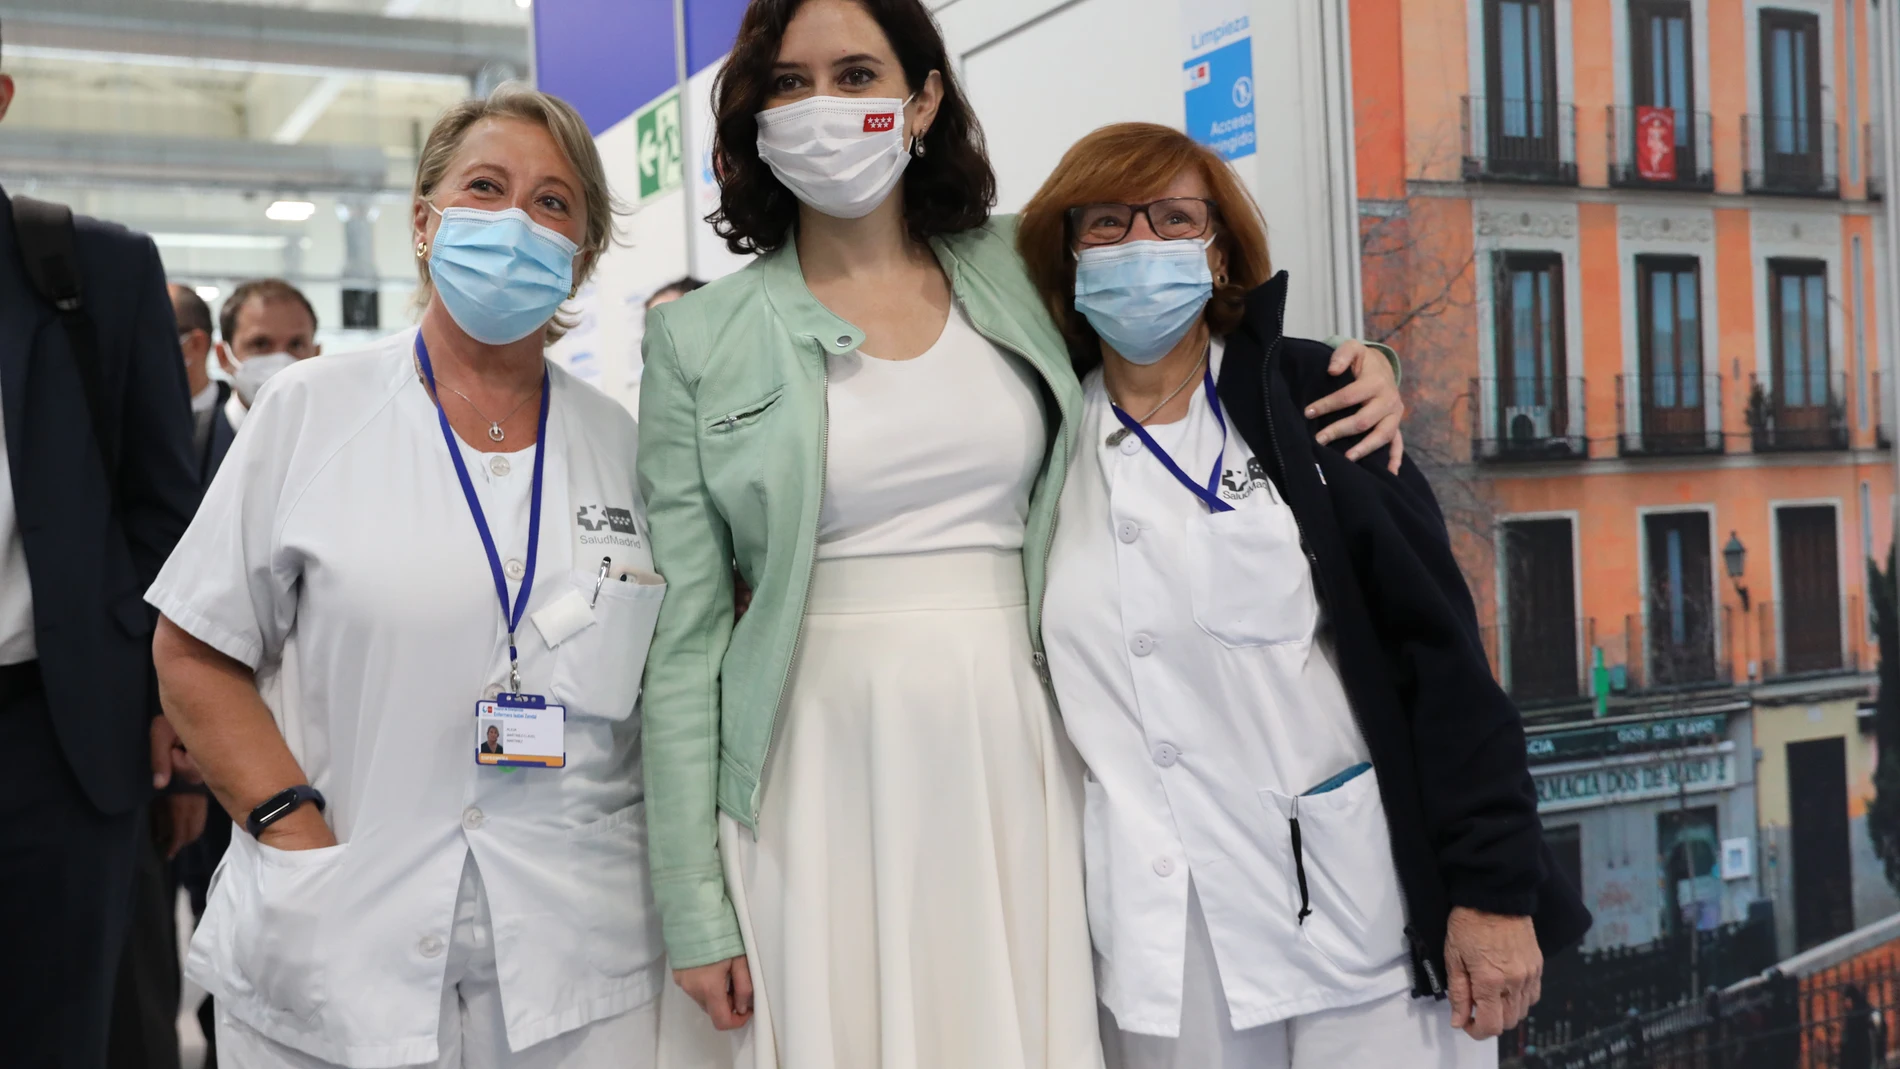 La presidenta de la Comunidad de Madrid, Isabel Díaz Ayuso, posa con dos trabajadoras sanitarias durante su visita al Hospital Enfermera Isabel Zendal